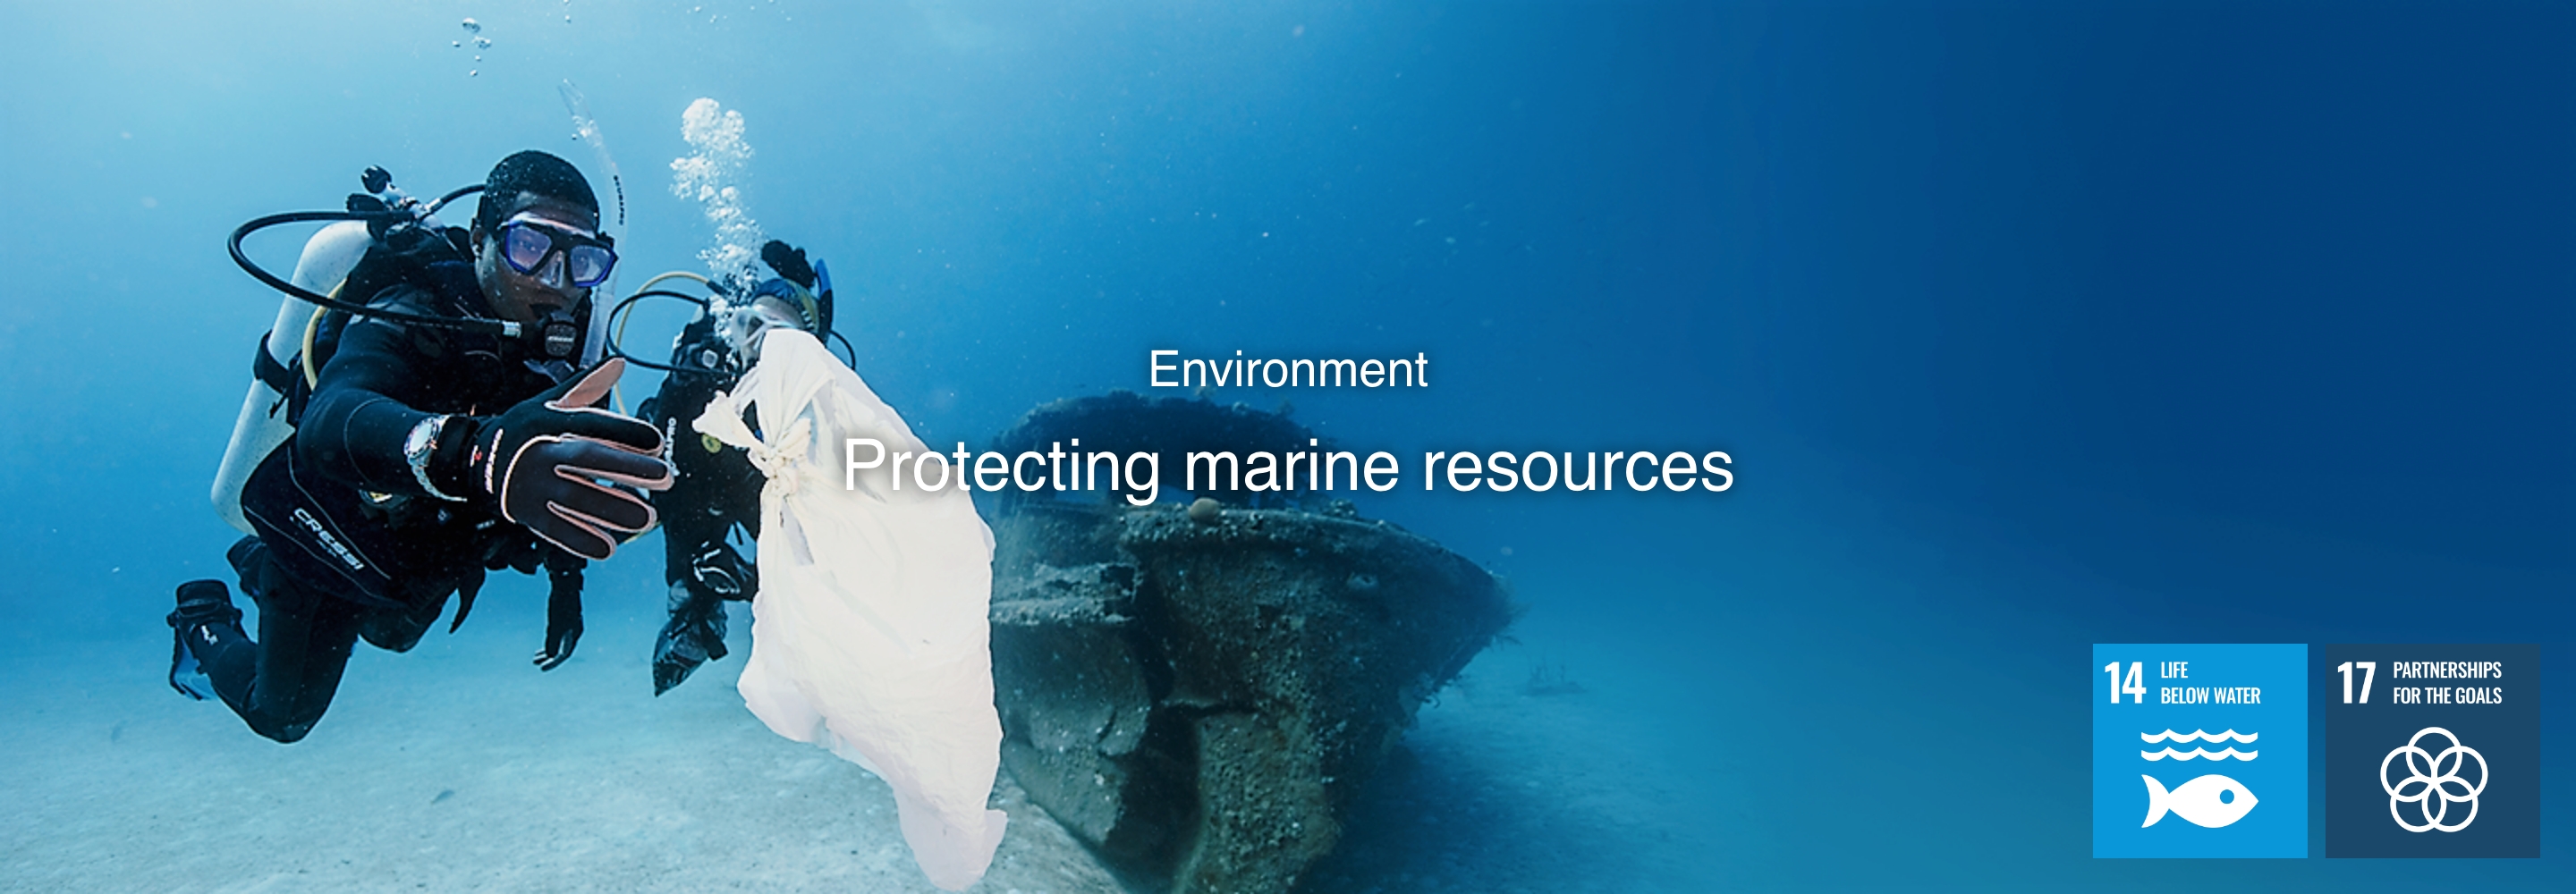 Ambiente Proteger os recursos marinhos